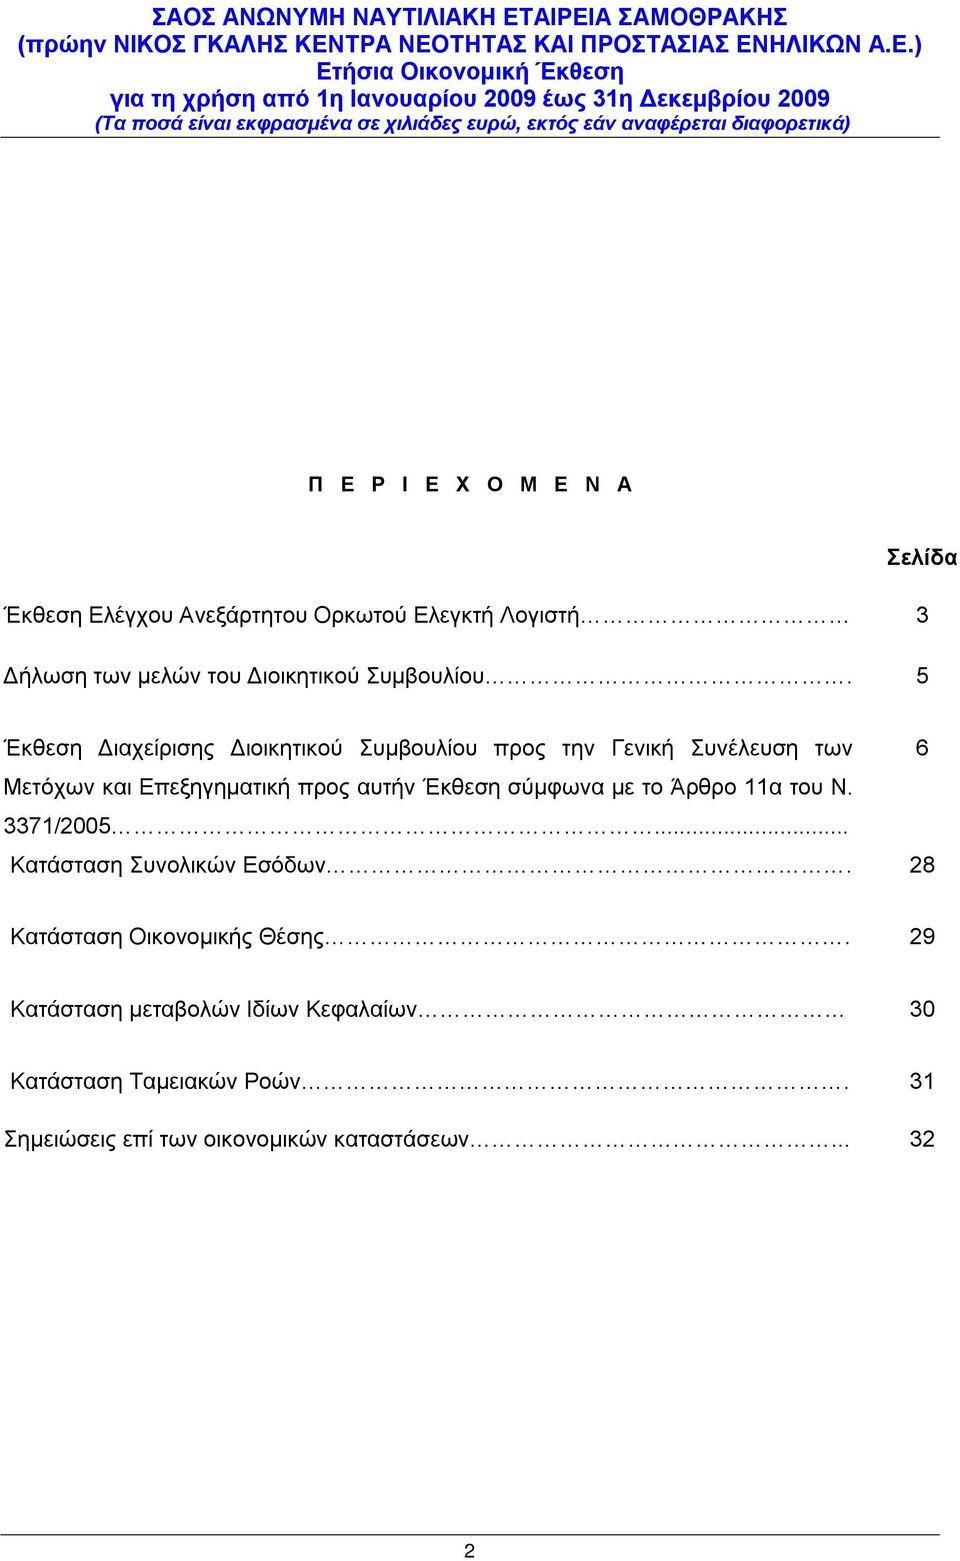 5 Σελίδα Έκθεση Διαχείρισης Διοικητικού Συμβουλίου προς την Γενική Συνέλευση των 6 Μετόχων και Επεξηγηματική προς